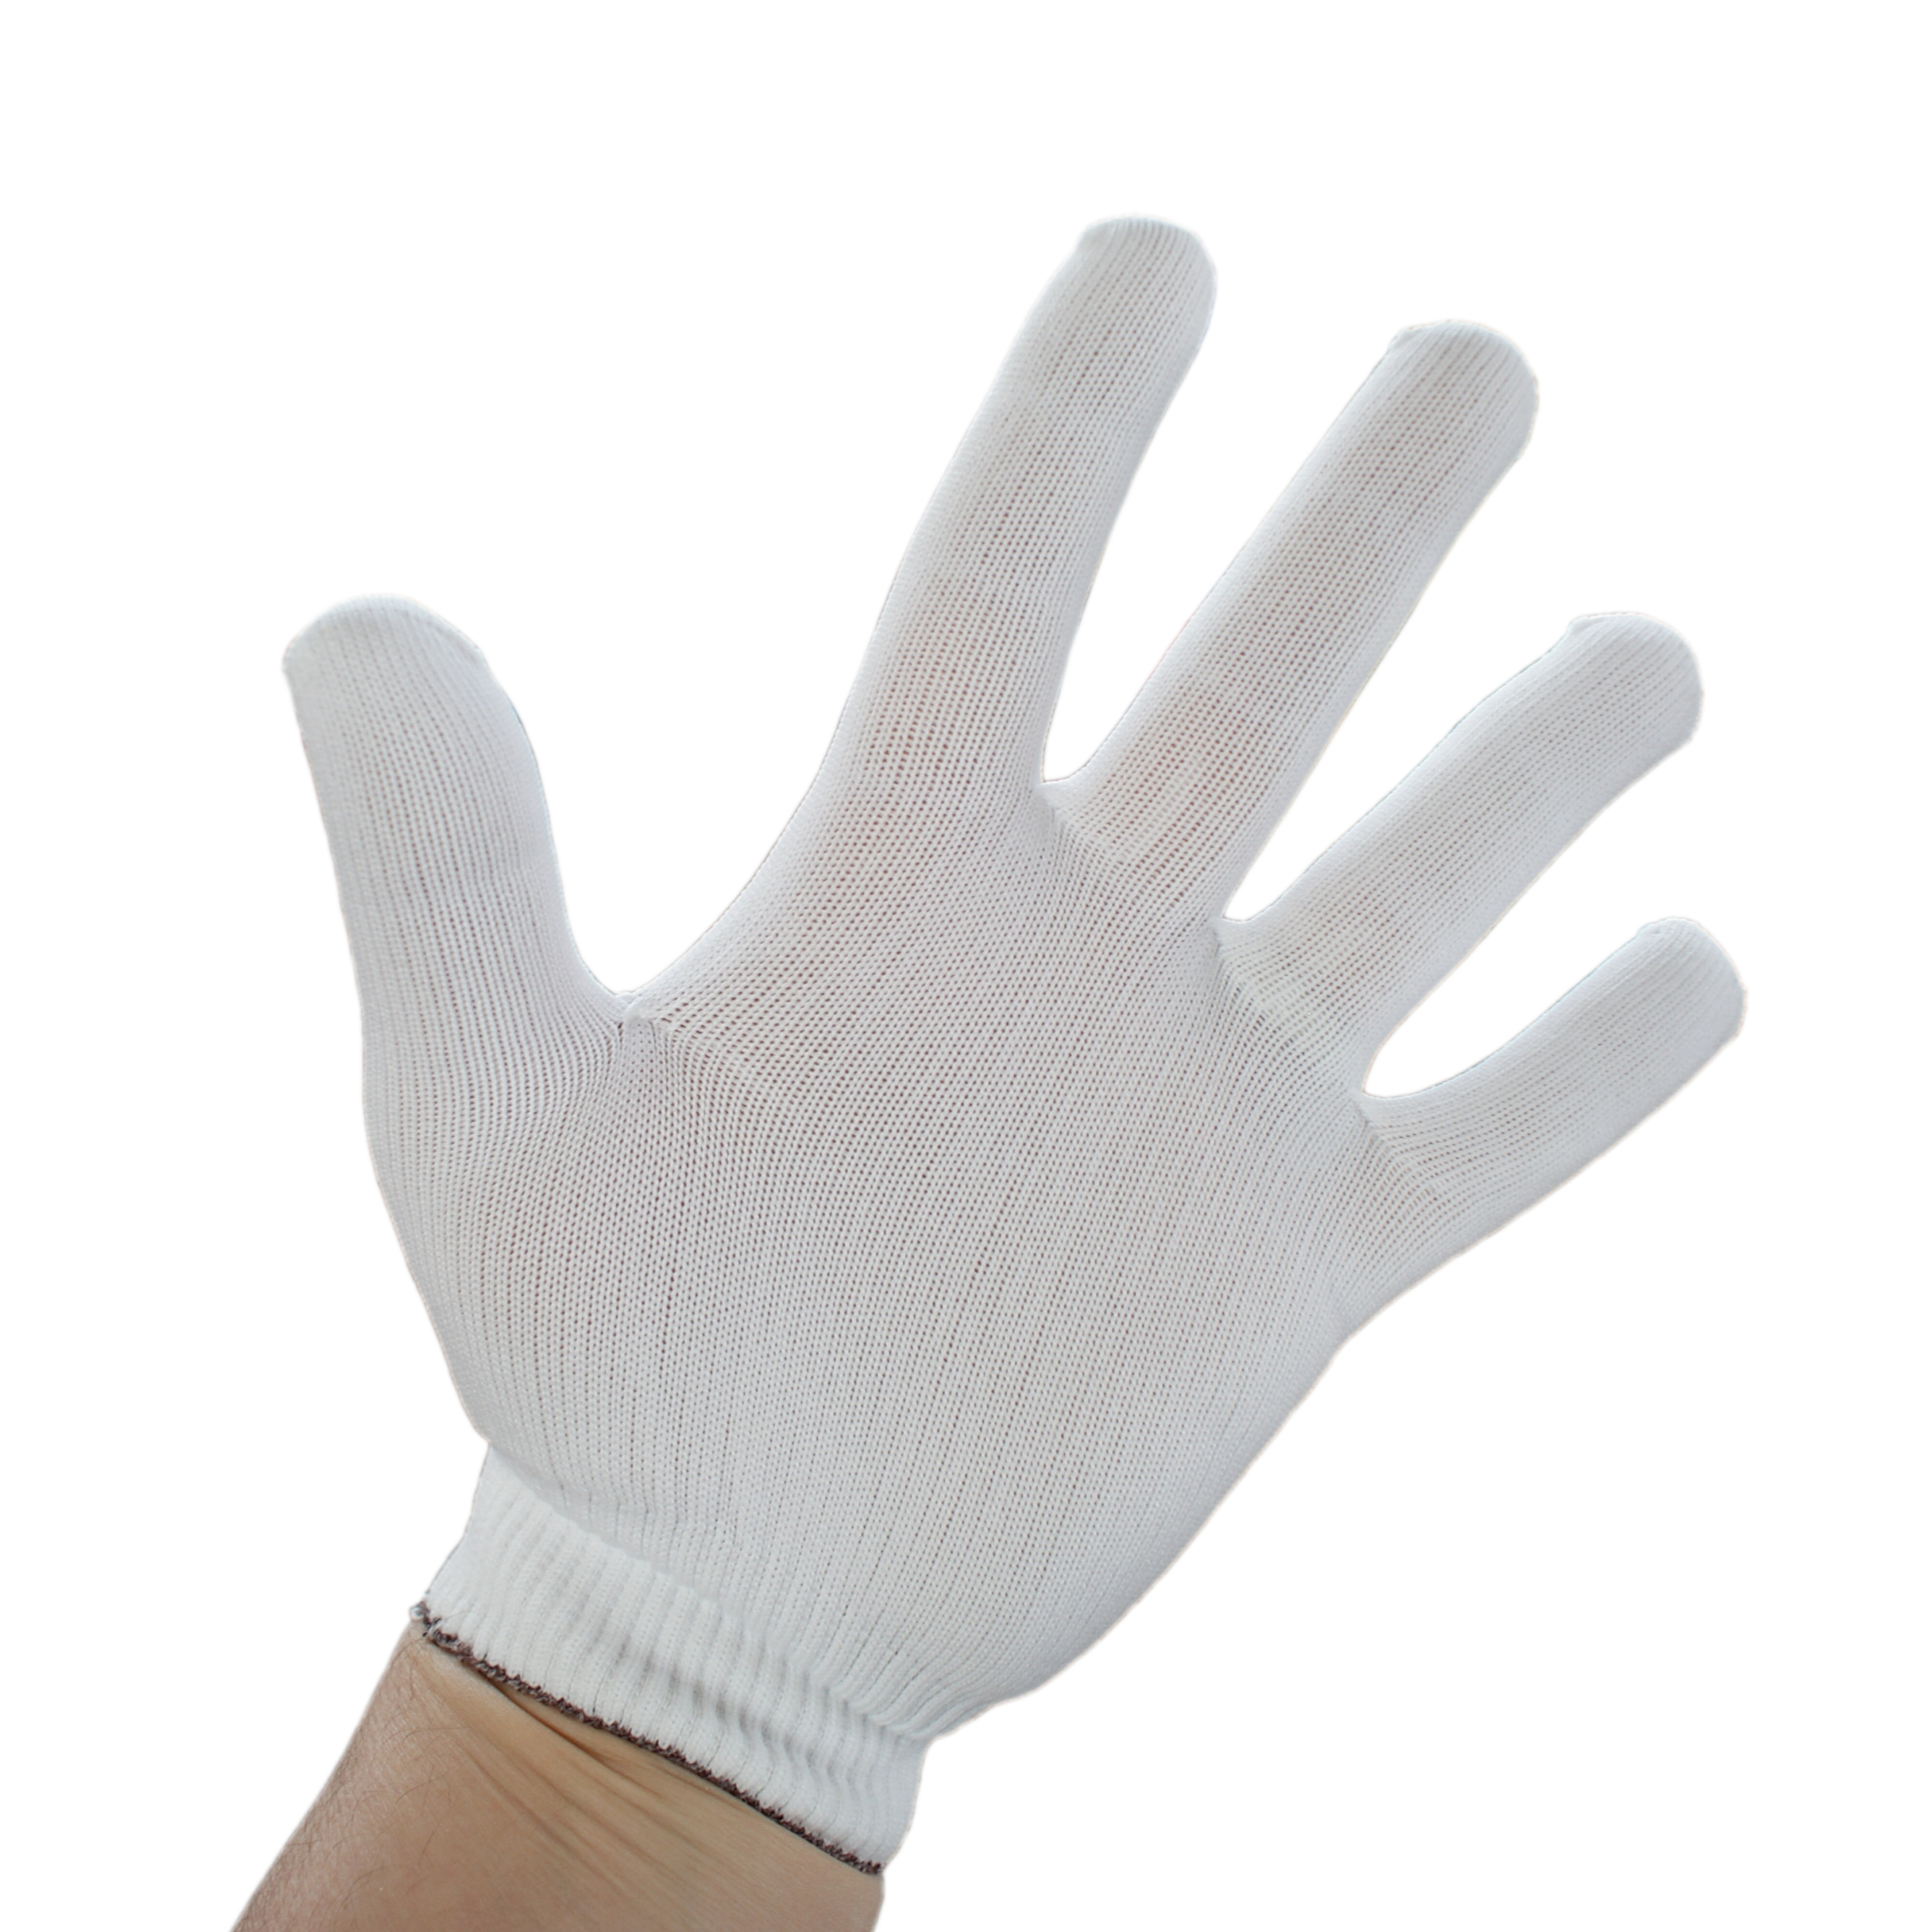 Nylon-Stretch gloves 10